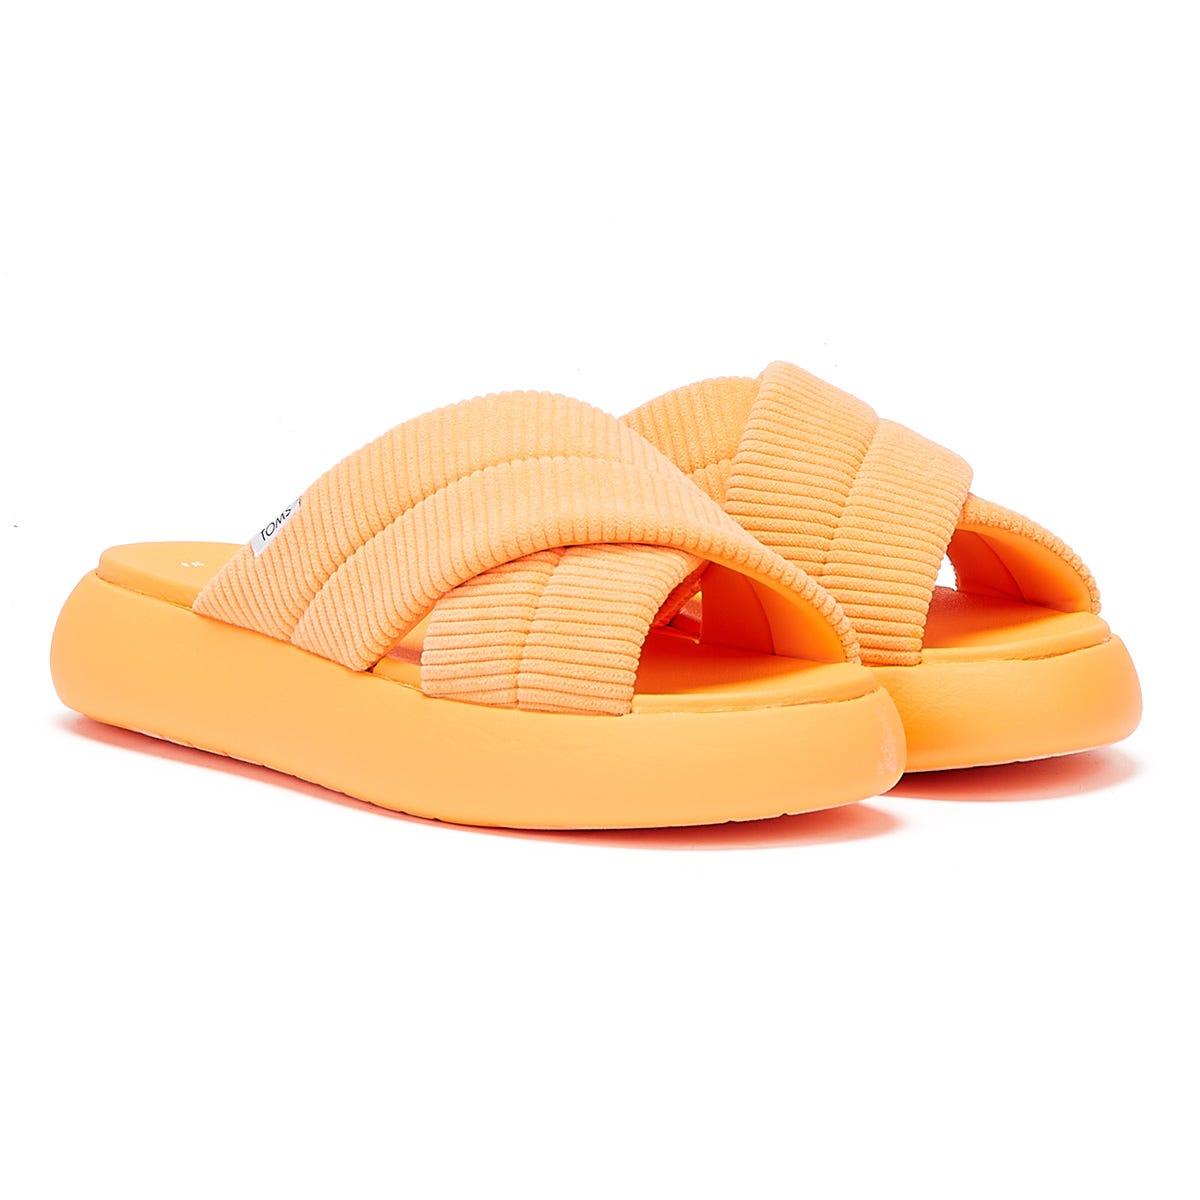 Atterley Women Shoes Flip Flops Orange Bicolalf Flip Flops 